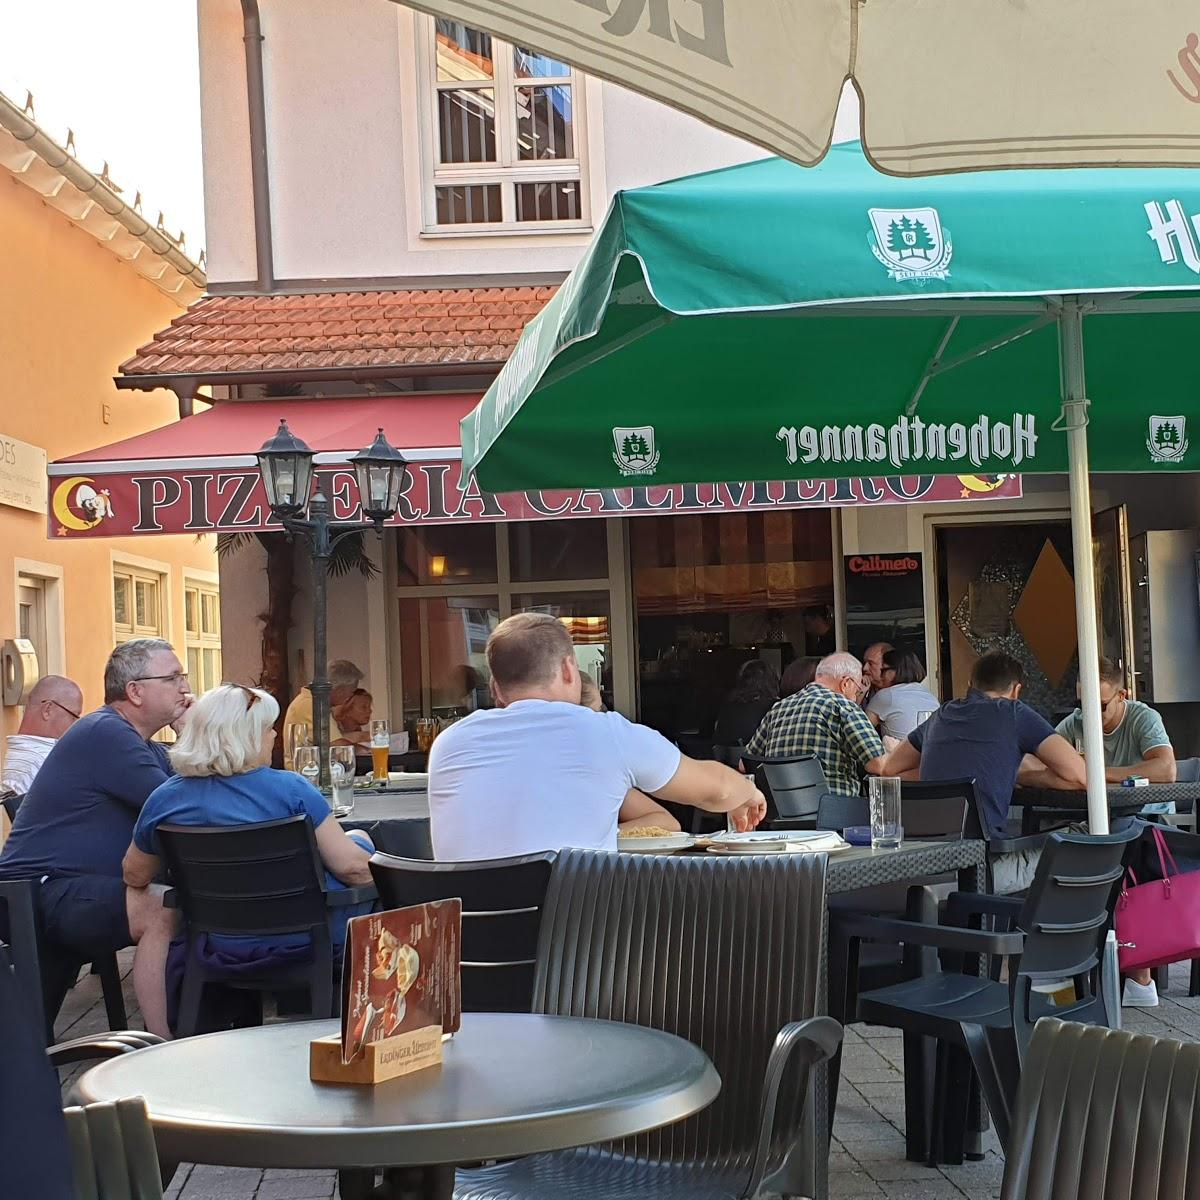 Restaurant "Eiscafé Riviera" in Essenbach